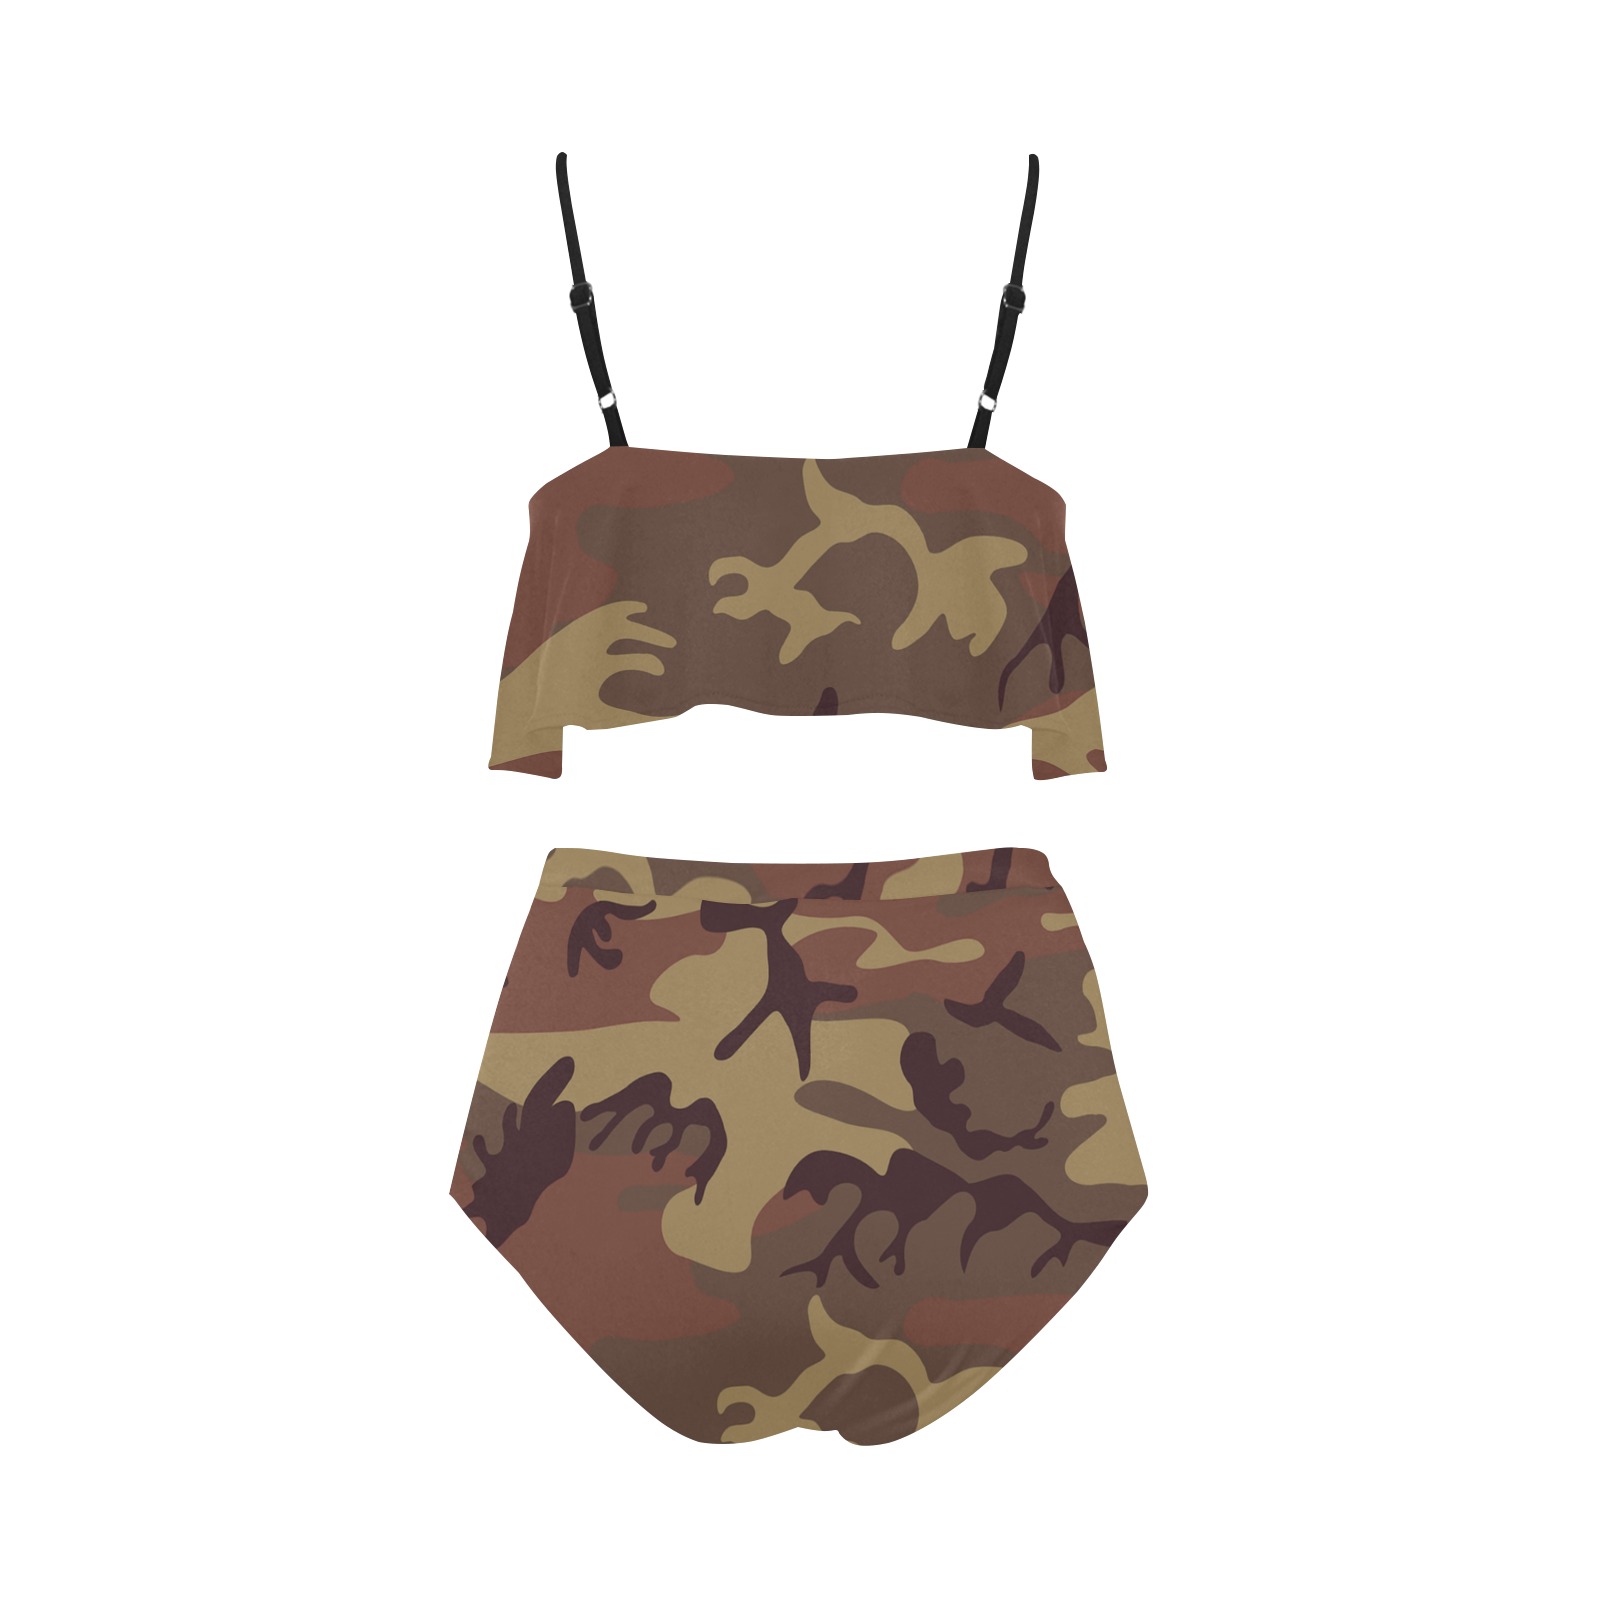 Camo Dark Brown High Waisted Ruffle Bikini Set (Model S13)